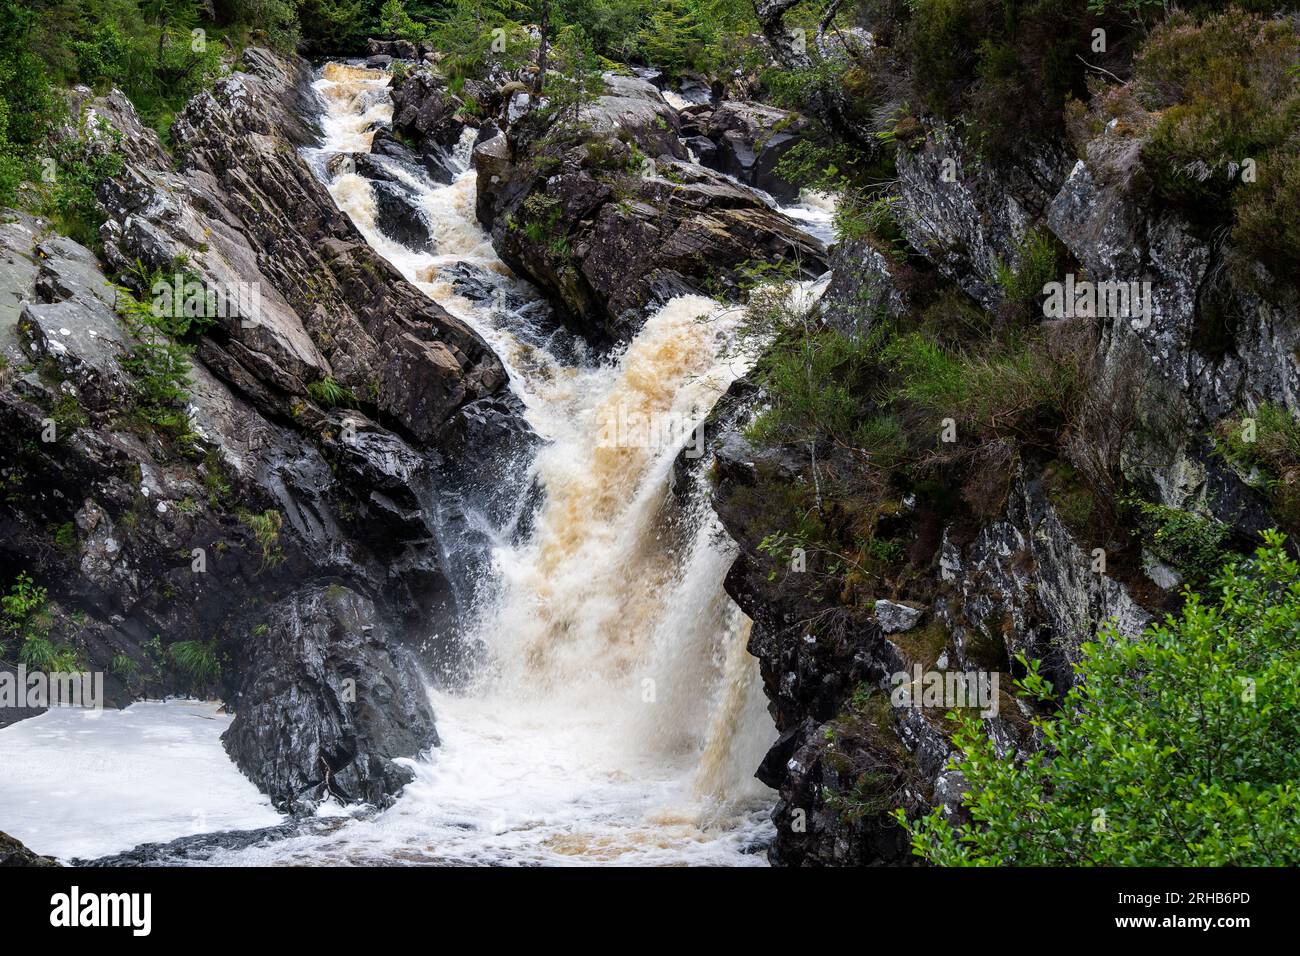 Rogie Falls on the Black Water nel Ross-shire nelle Highlands scozzesi, Regno Unito Foto Stock